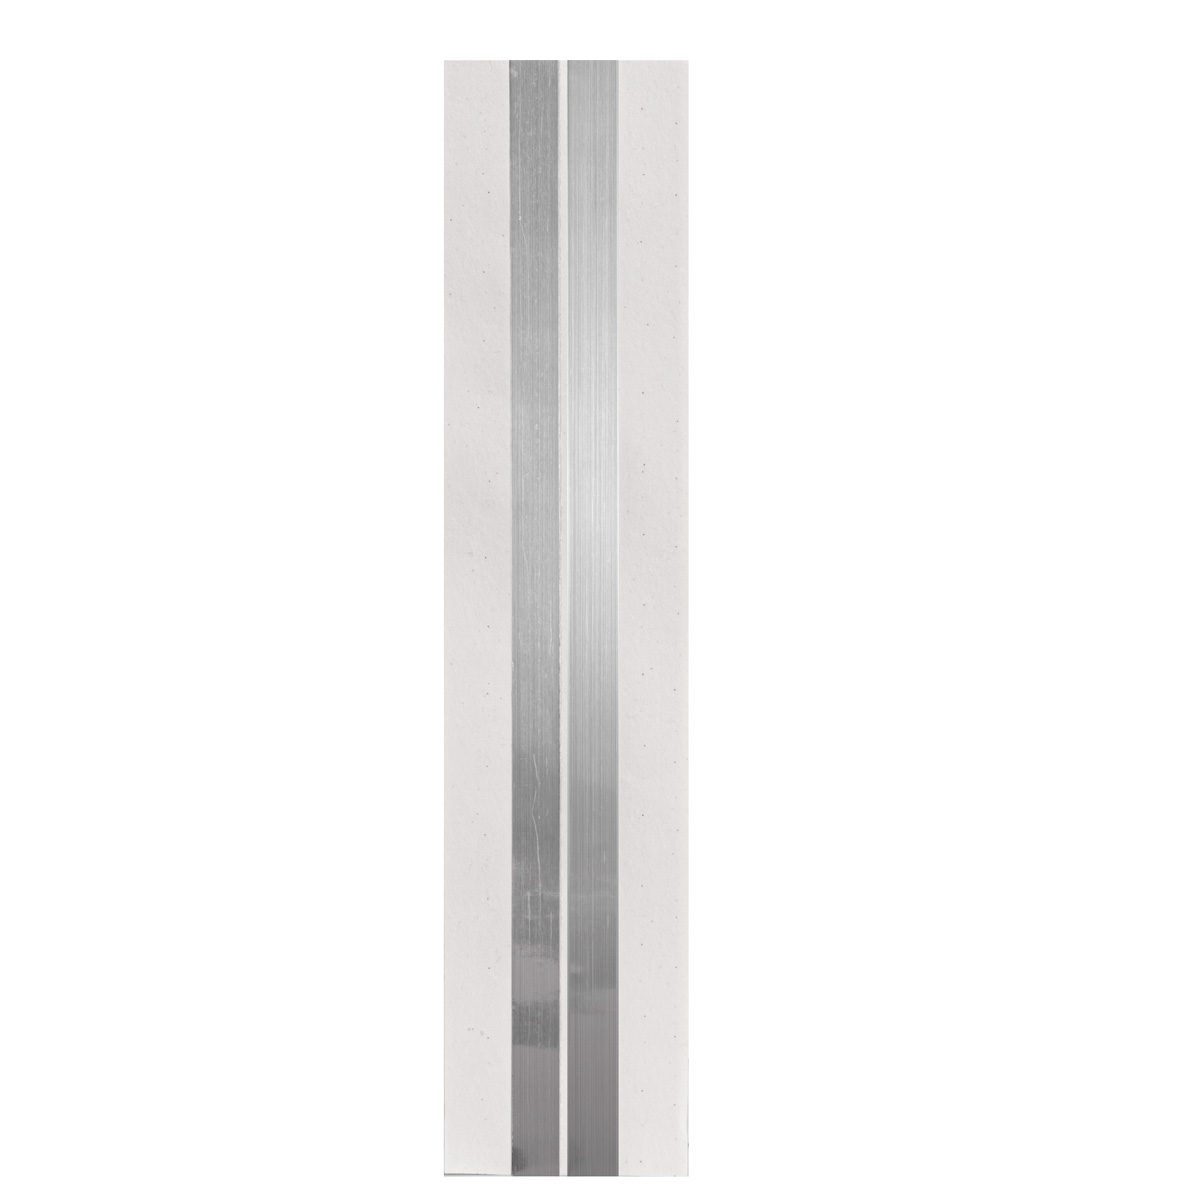 Paper-faced aluminium corner bead 30m 